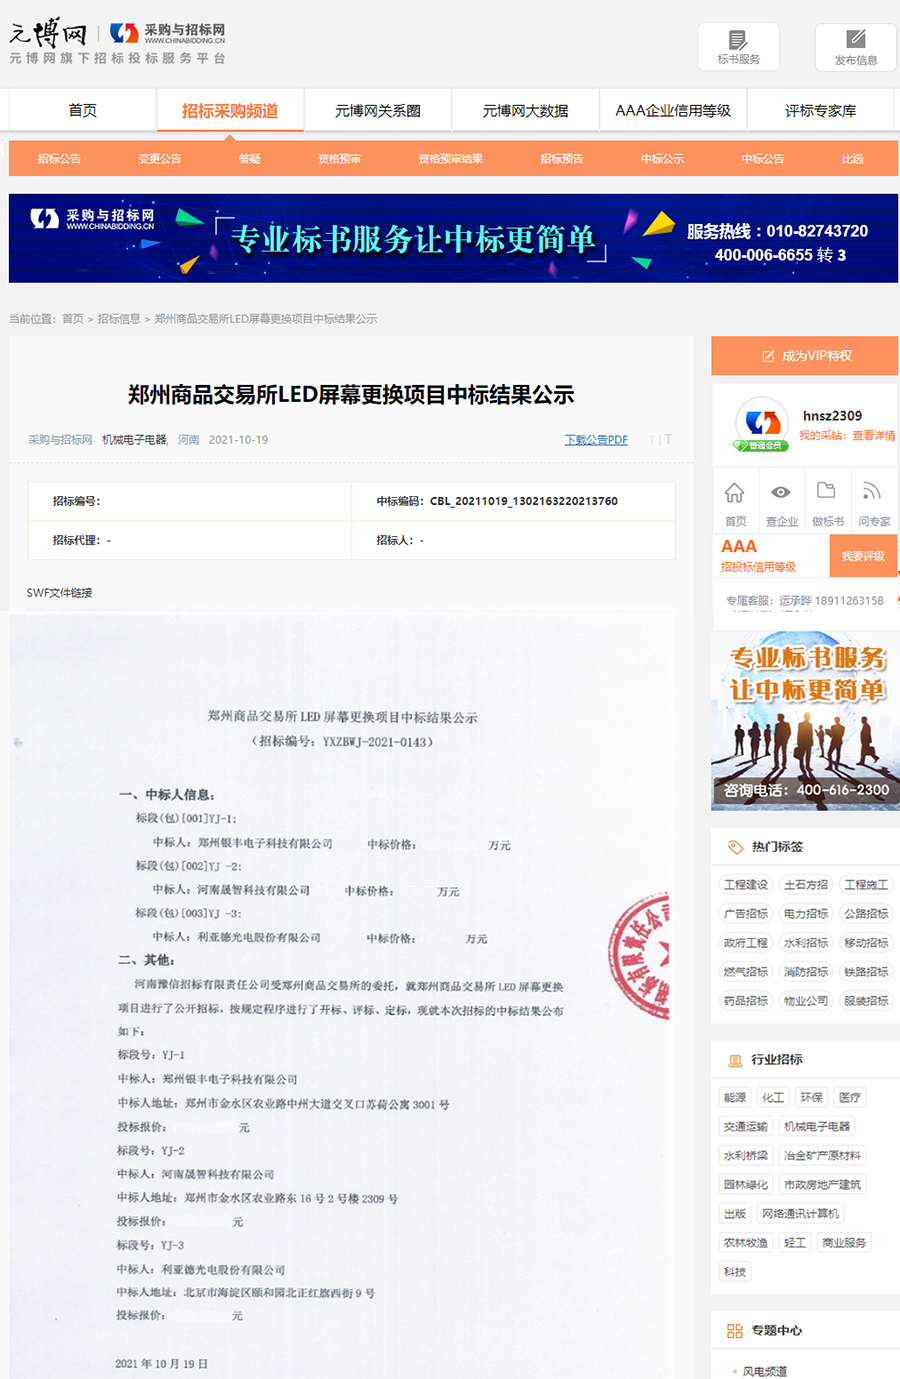 2021.10.19中标2021年郑州商品交易所的大屏和分布式项目